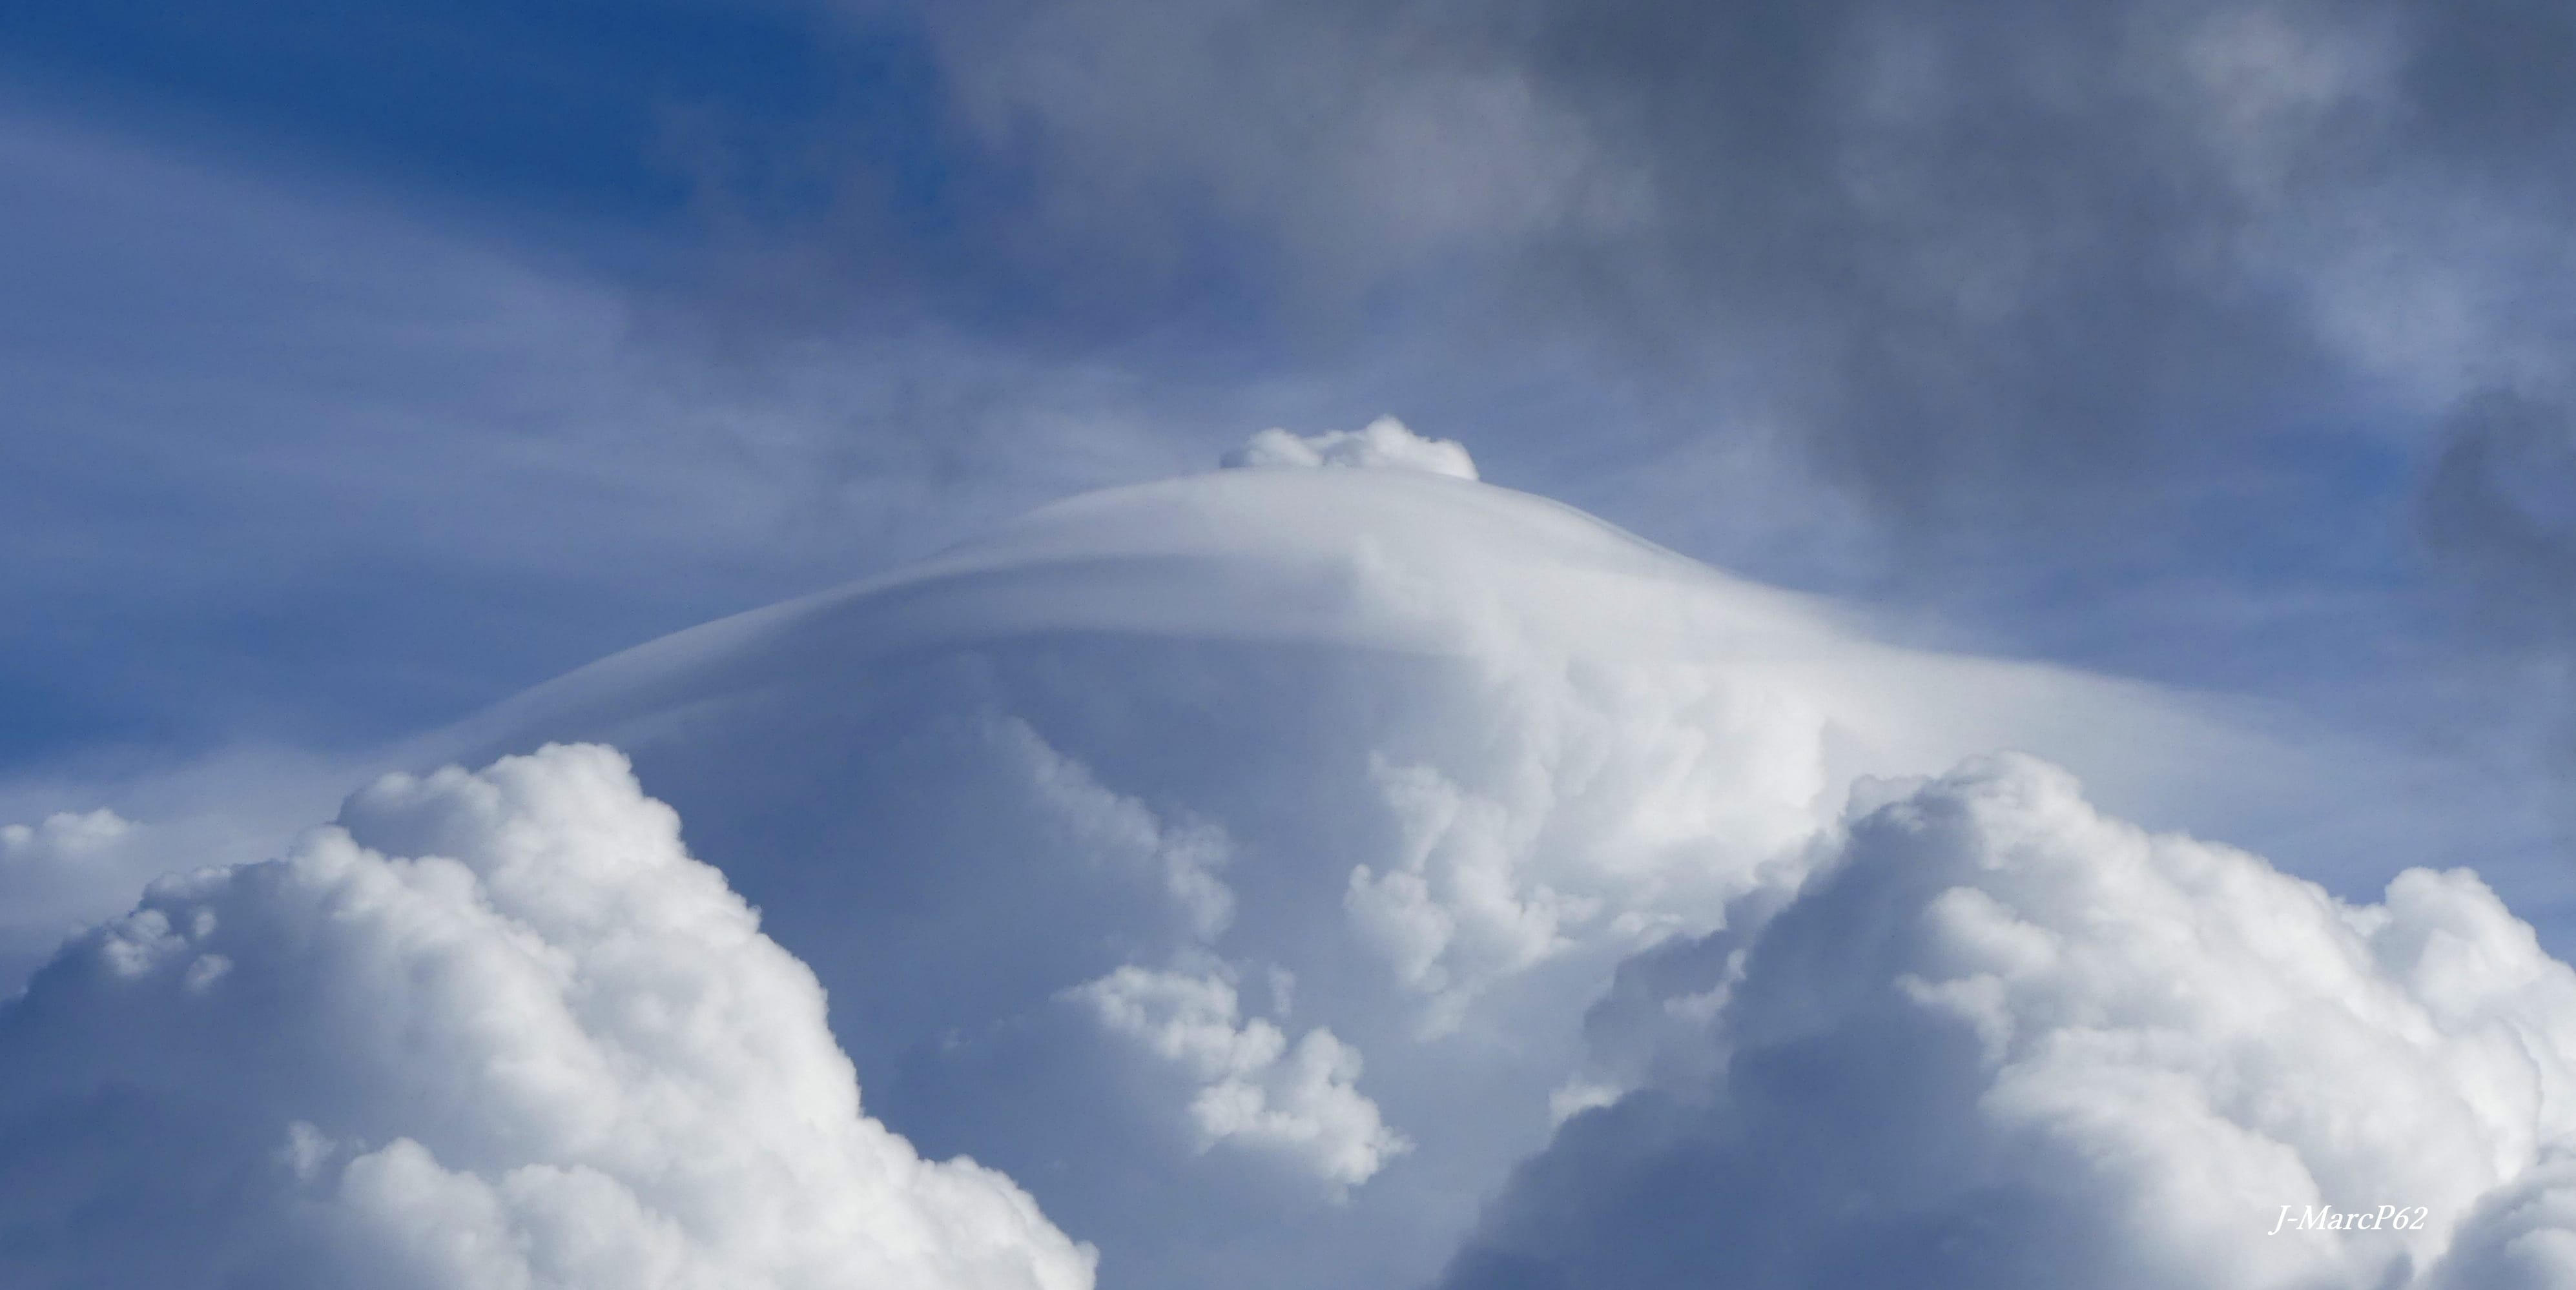 Pileus coiffant un cumulus - 05/10/2020 15:32 - jean-marc pourcelet